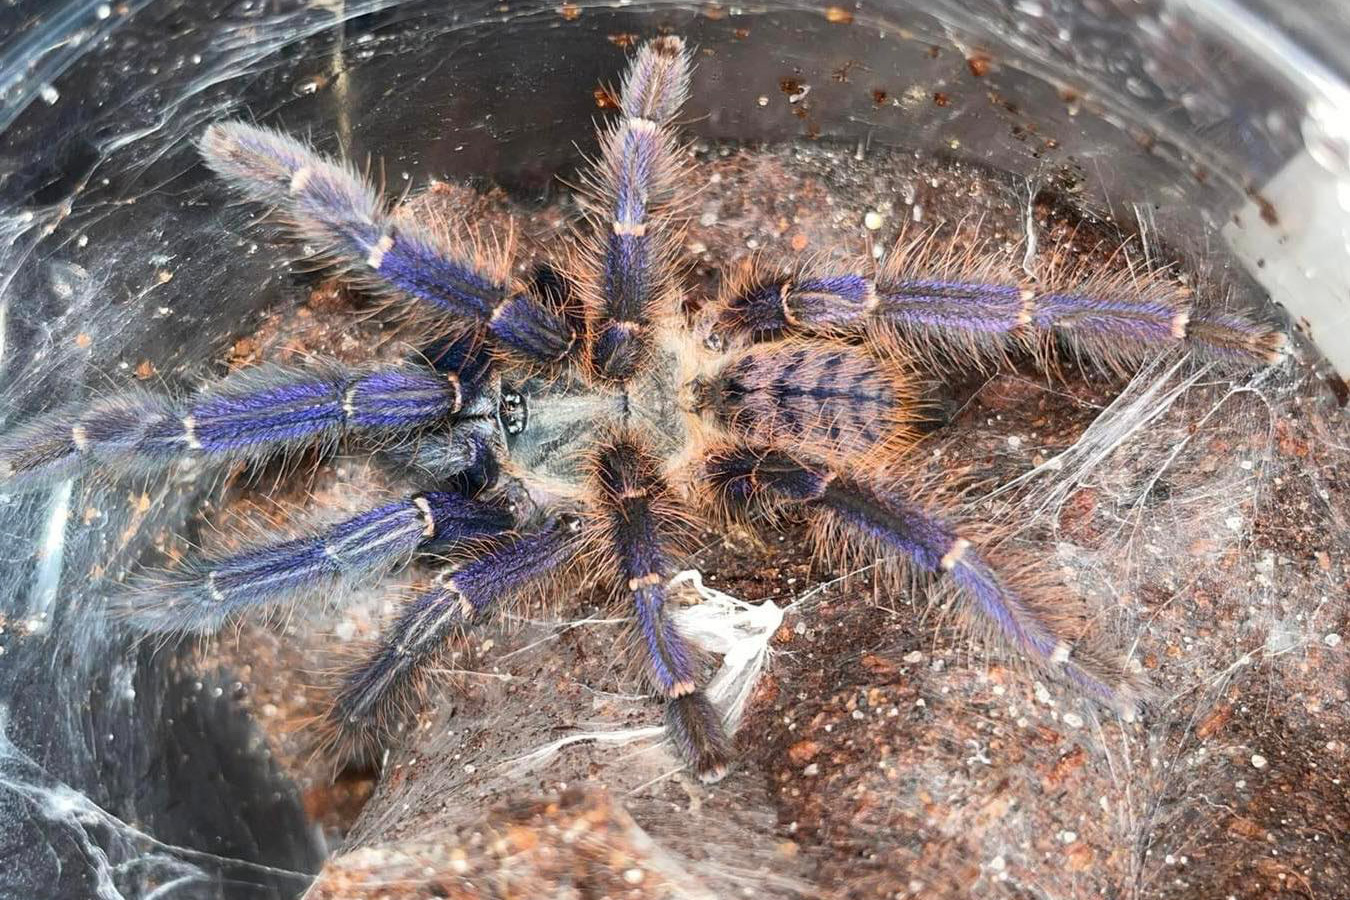 Phormingochilus sp. “Sabah blue” 2cm